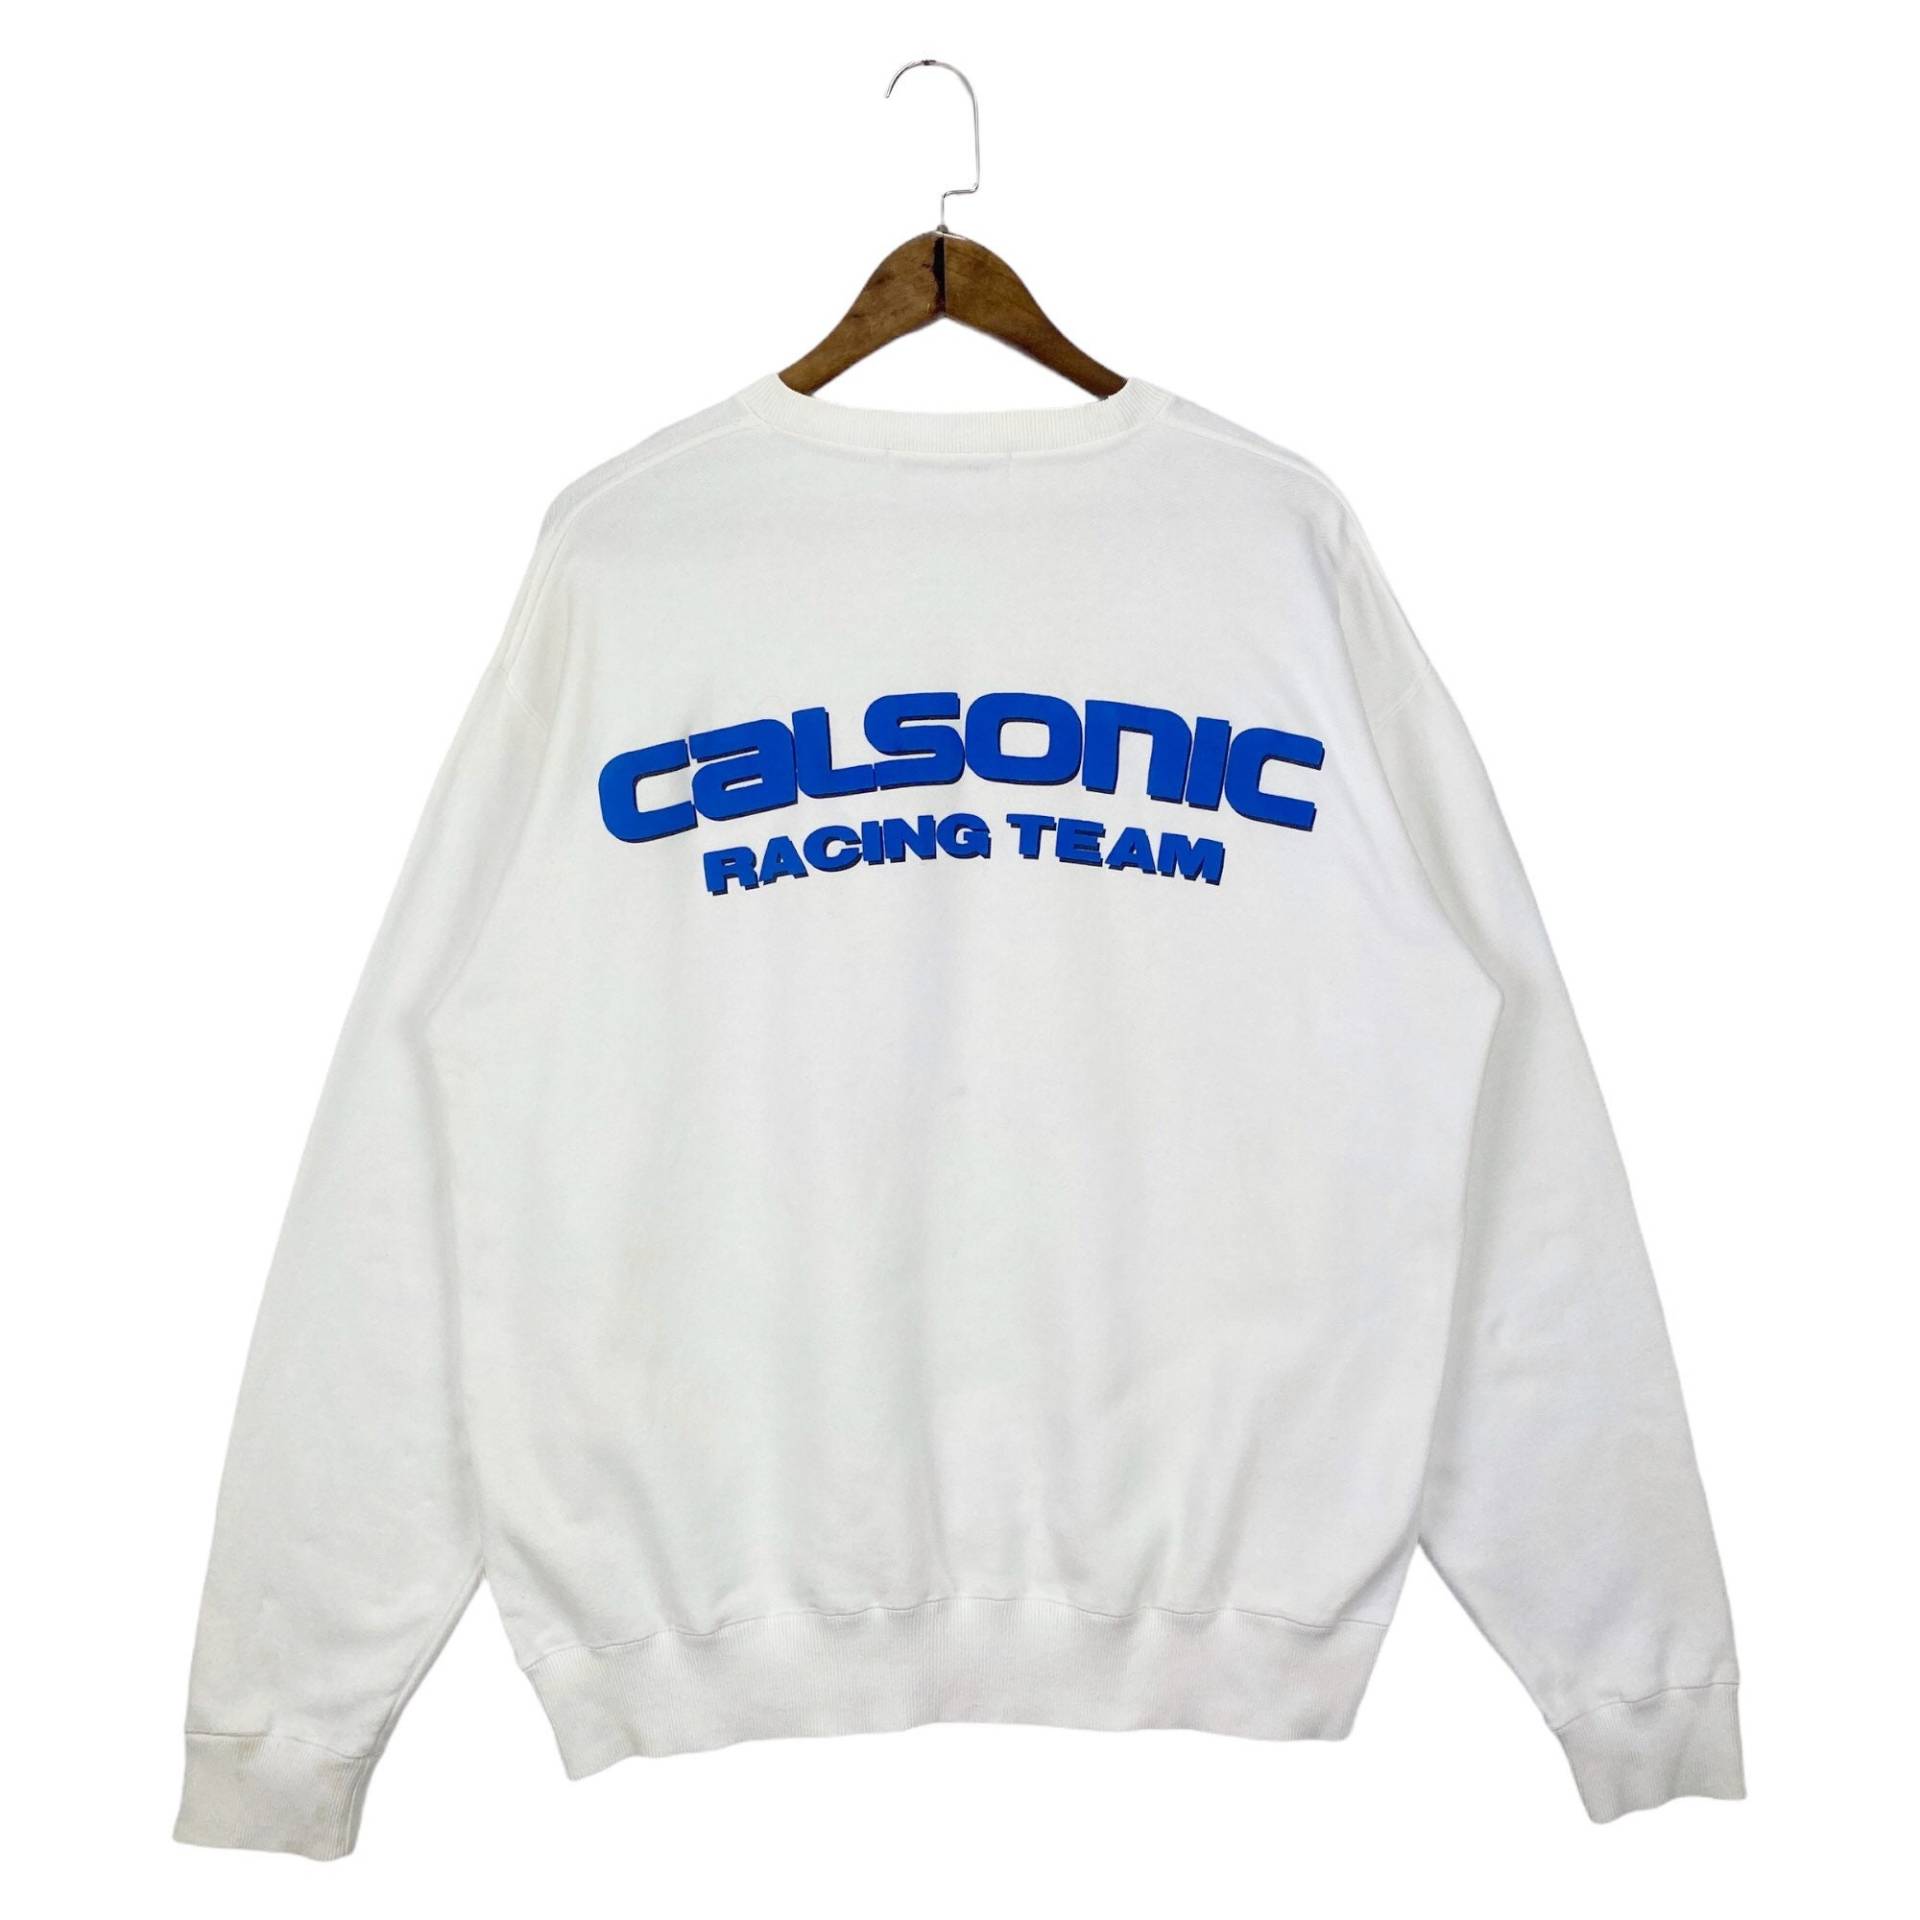 Vintage 90Er Jahre Calsonic Racing Team Sweatshirt Rundhalsausschnitt Big Logo Spellout Weißer Pullover Größe L von RevivalModeWarehaus